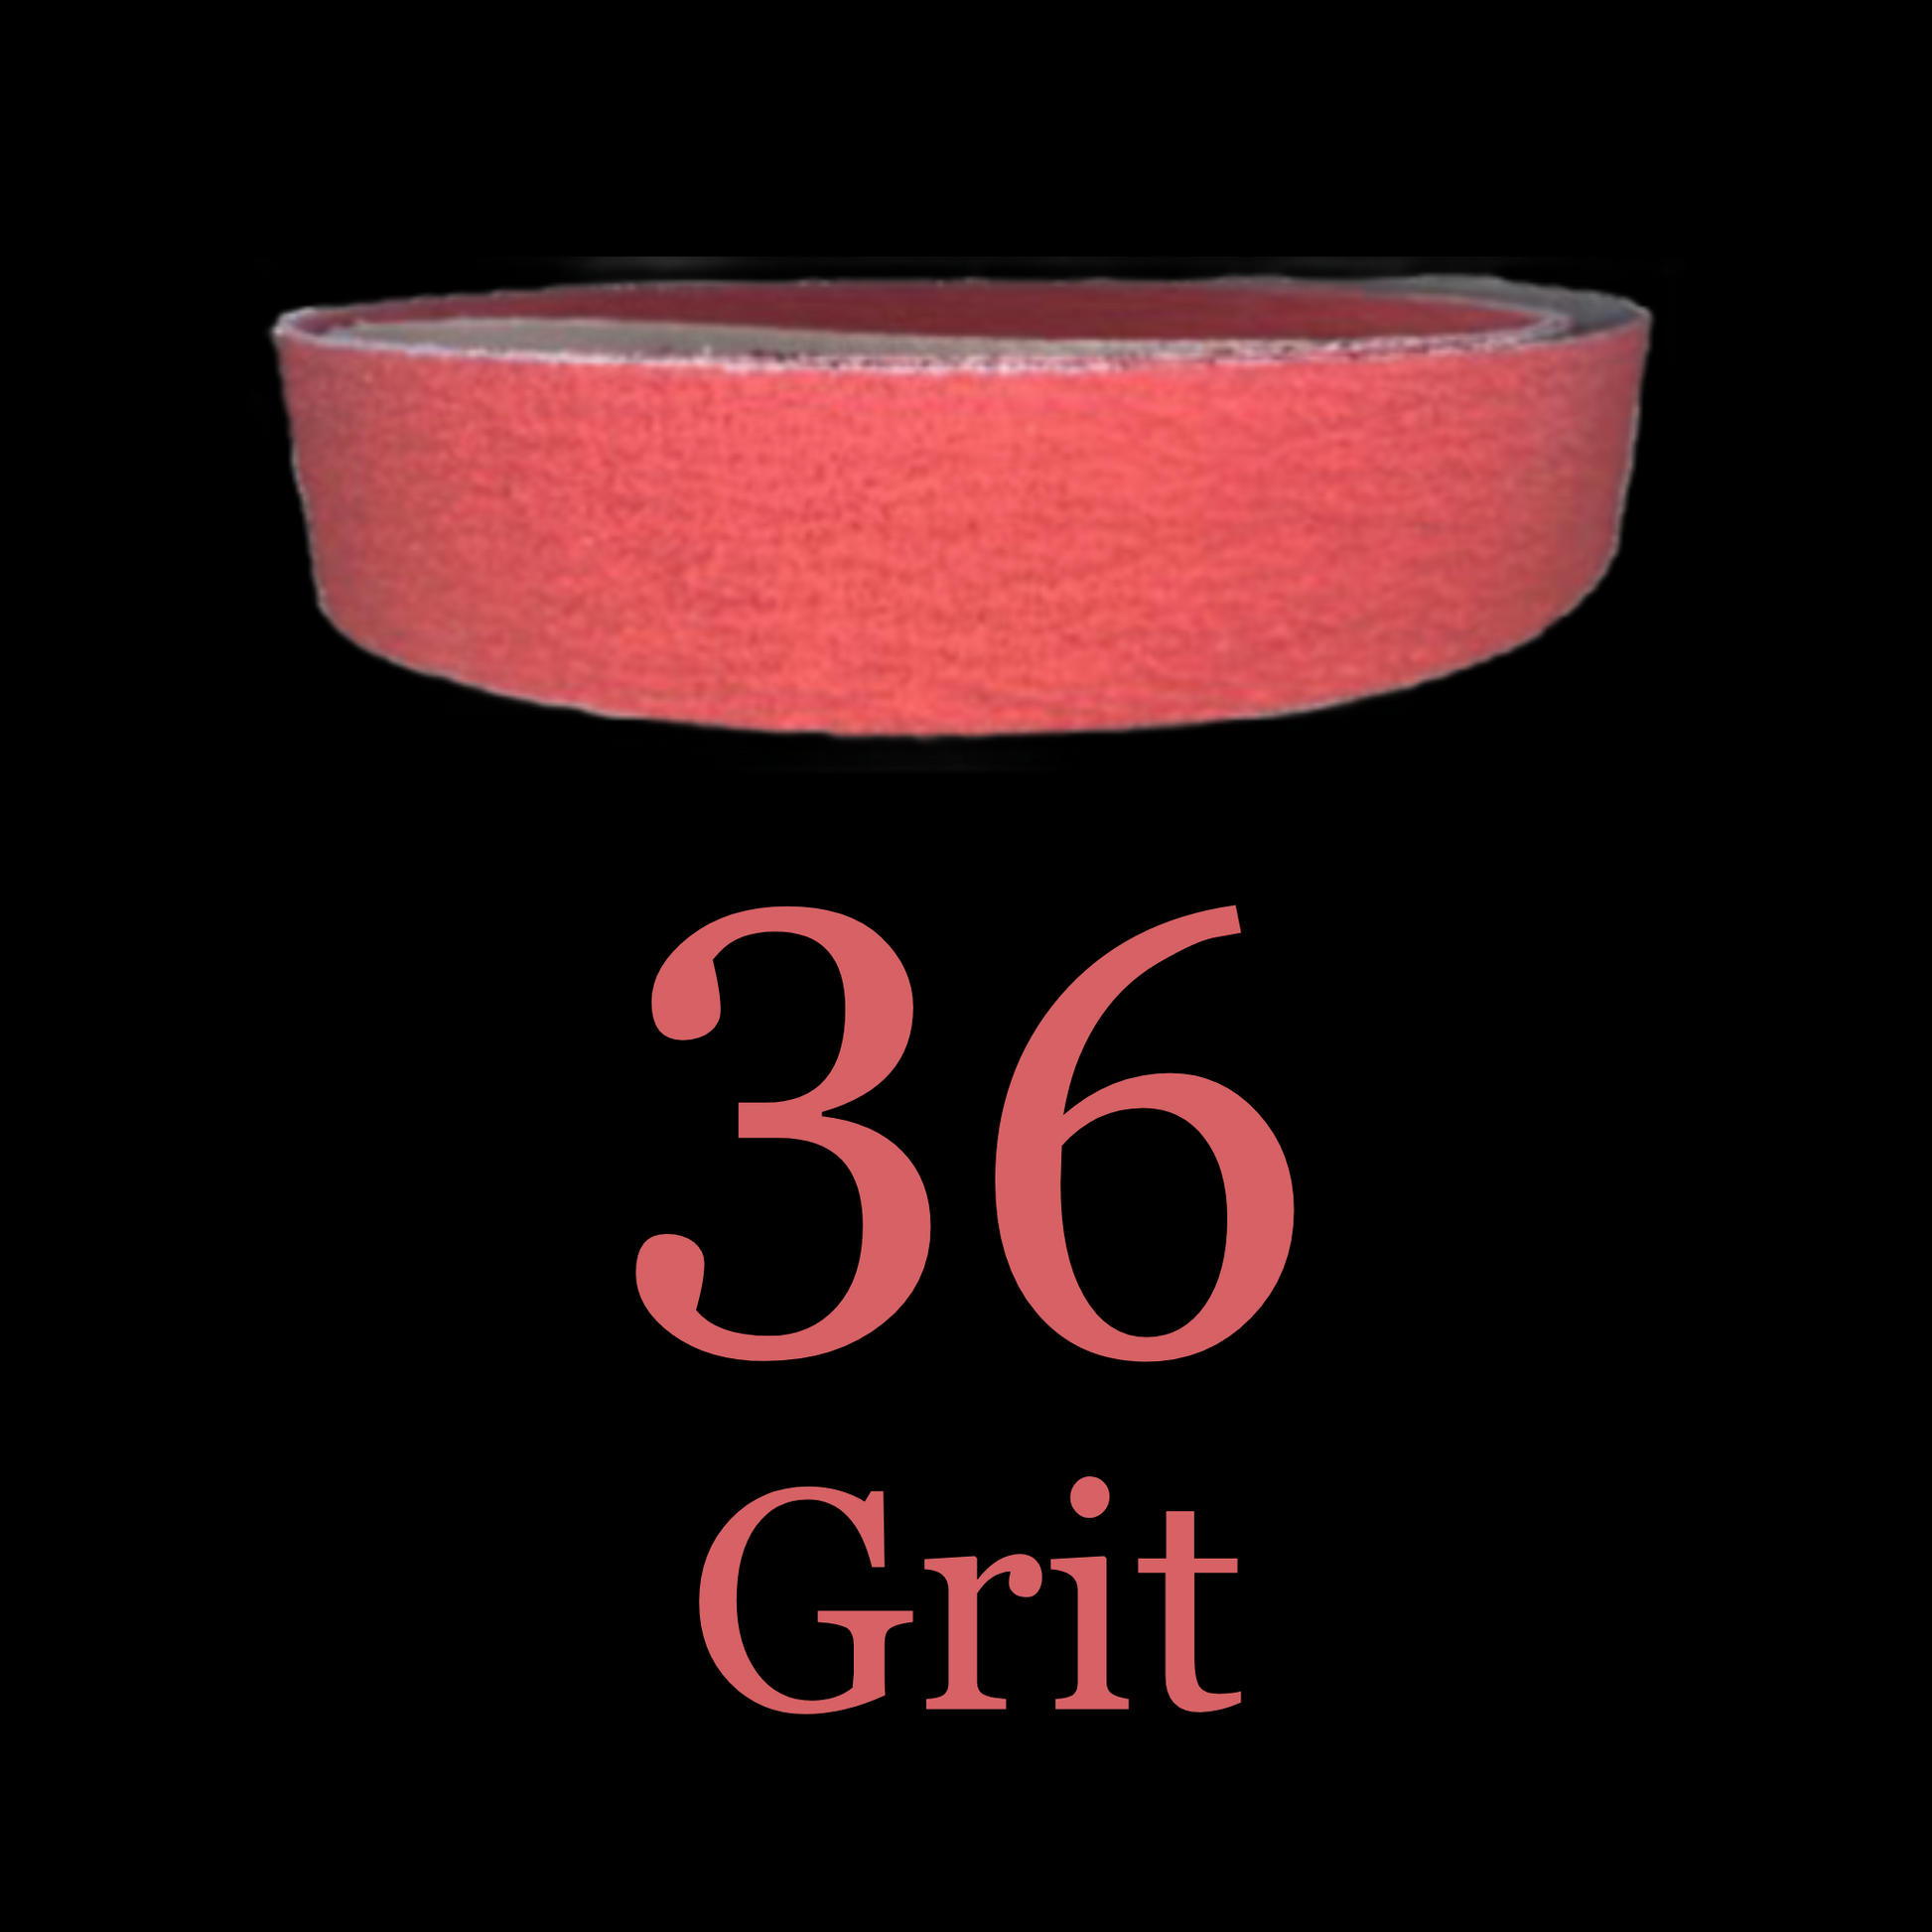 2” x 72” Red Ripper Phoenix Premium Ceramic Belts 36 Grit